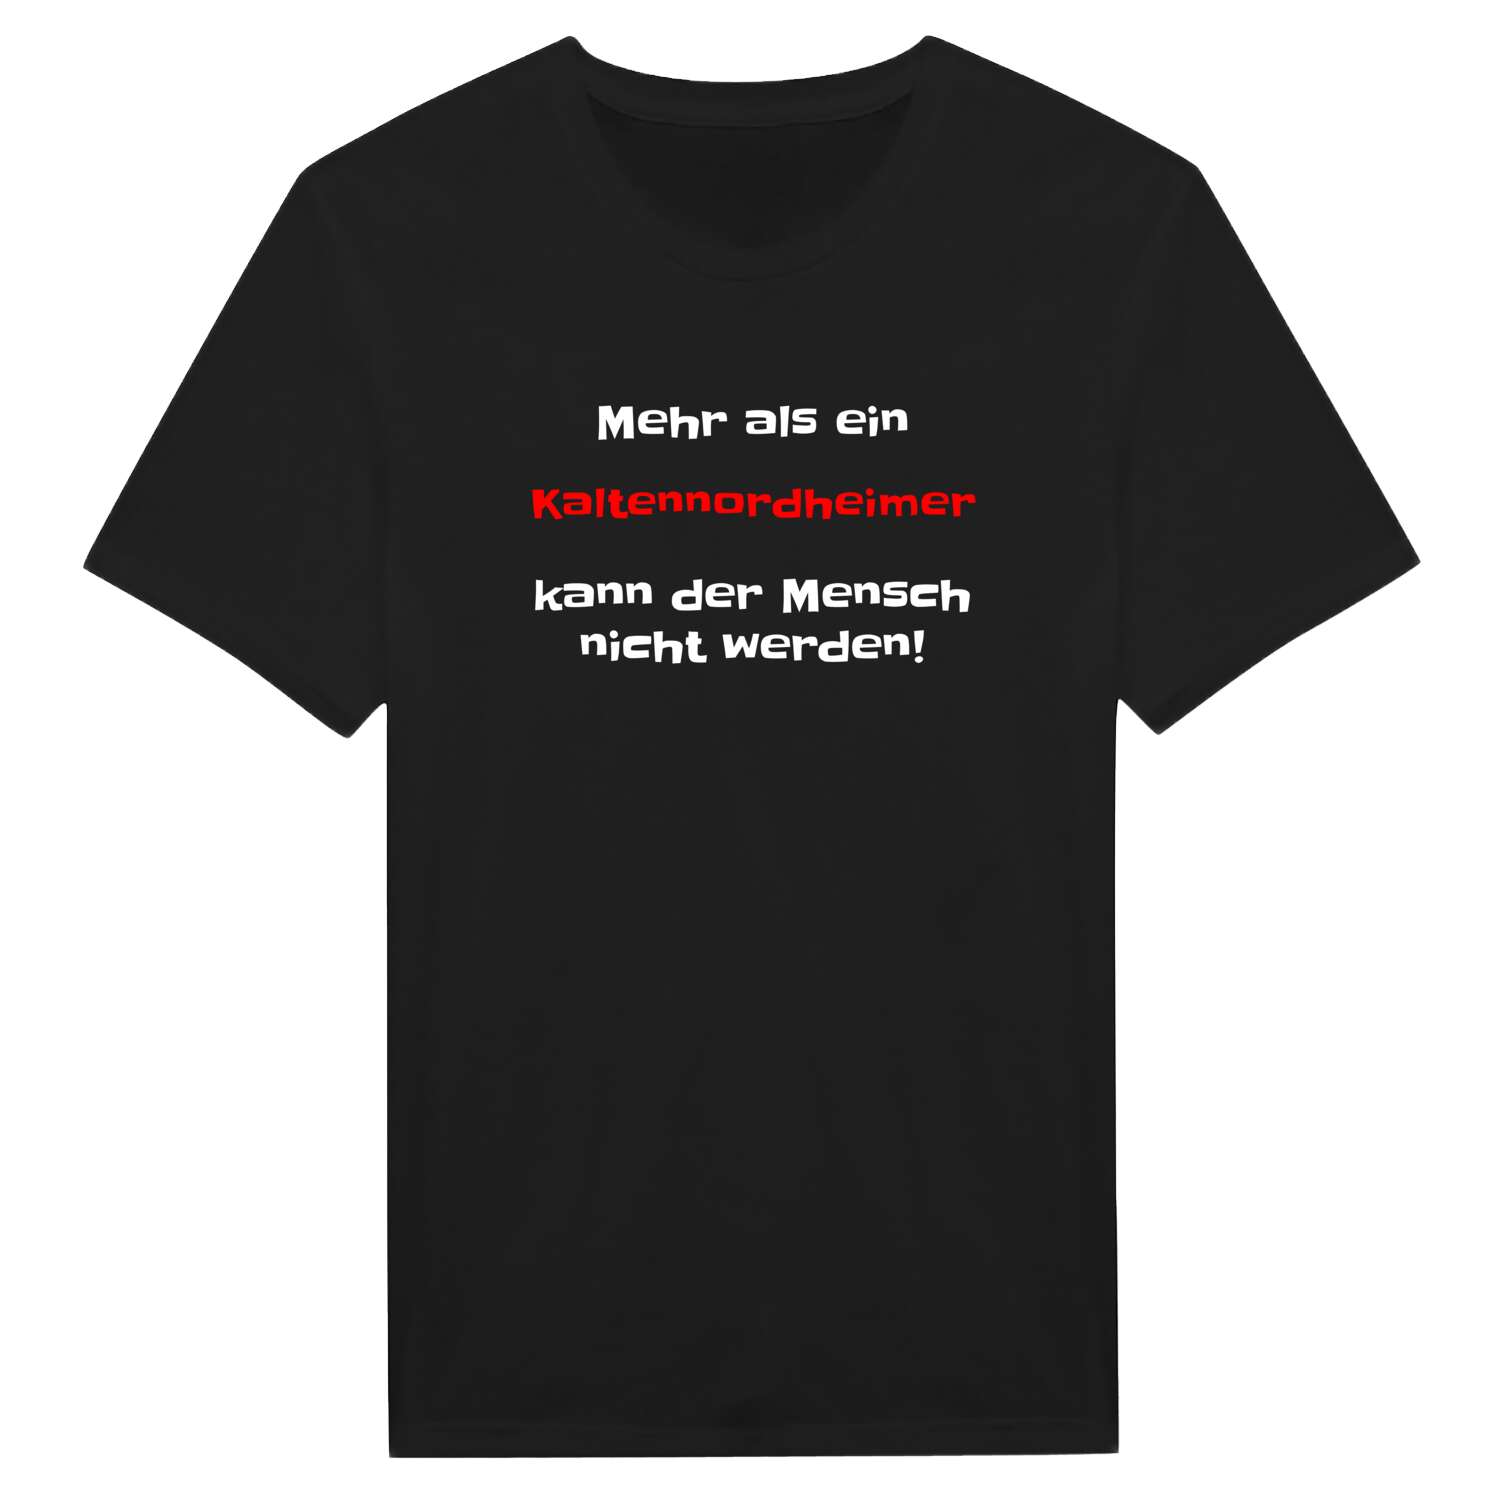 Kaltennordheim T-Shirt »Mehr als ein«